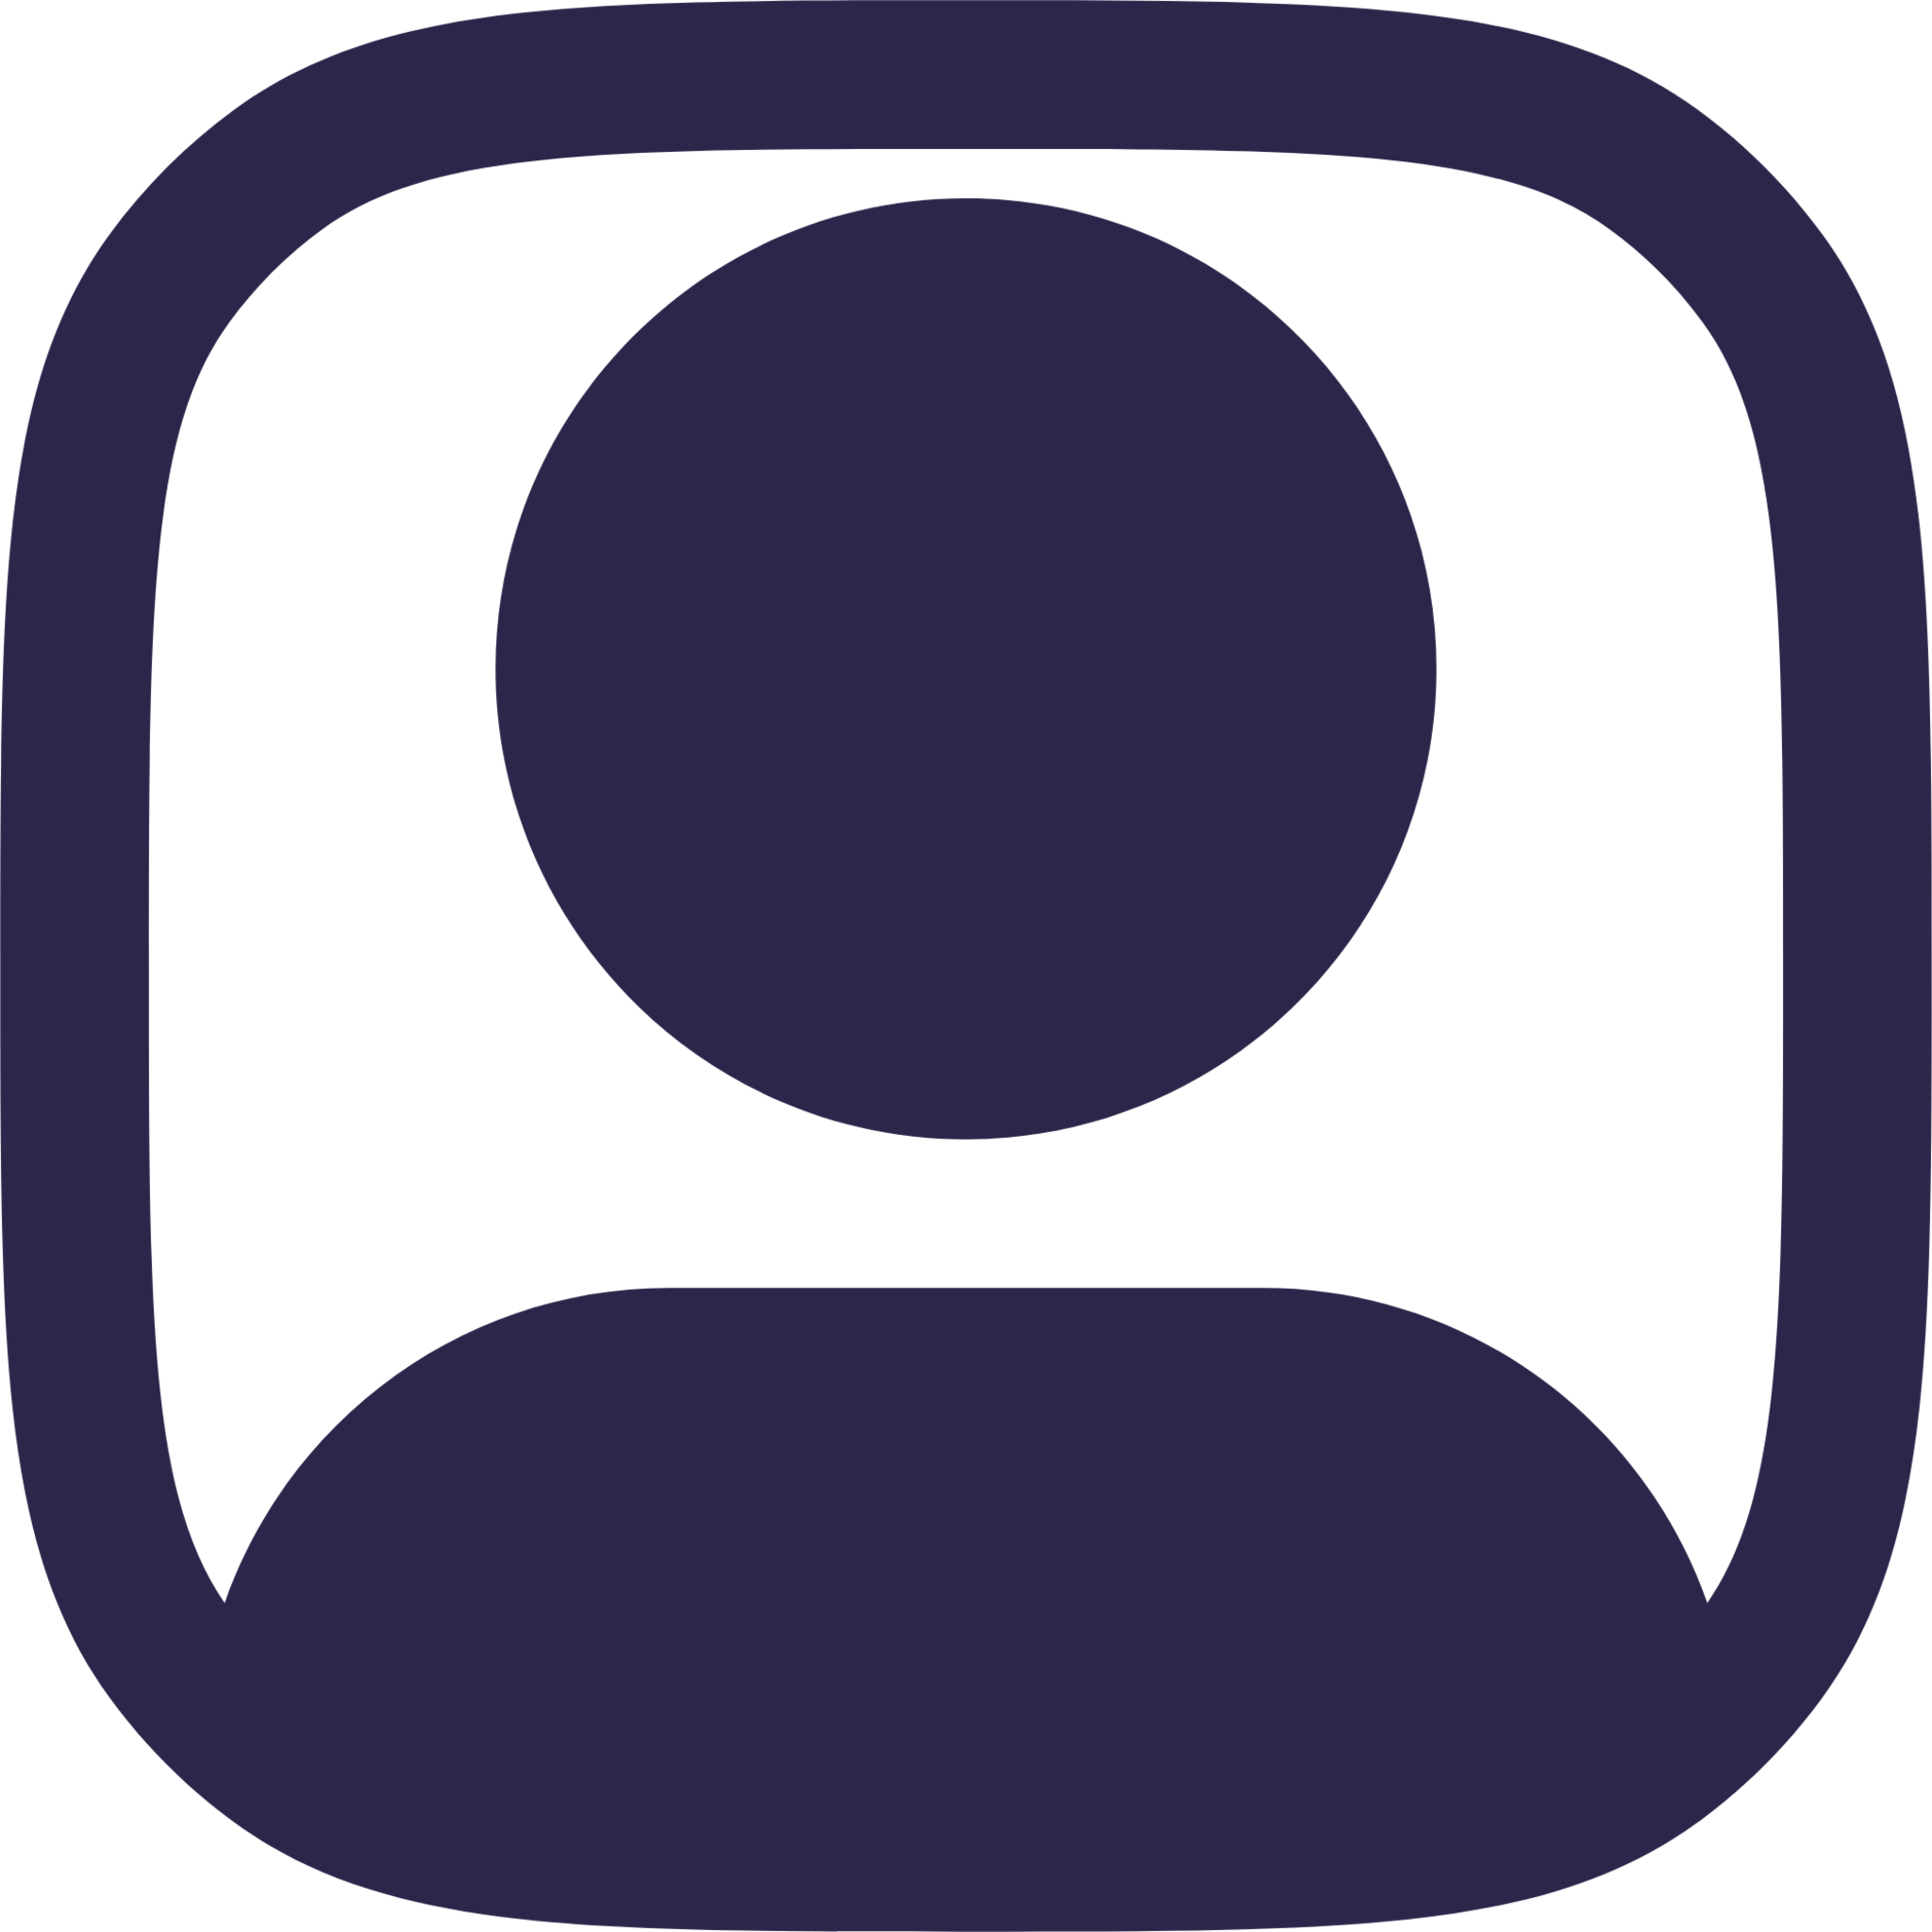 profile square icon